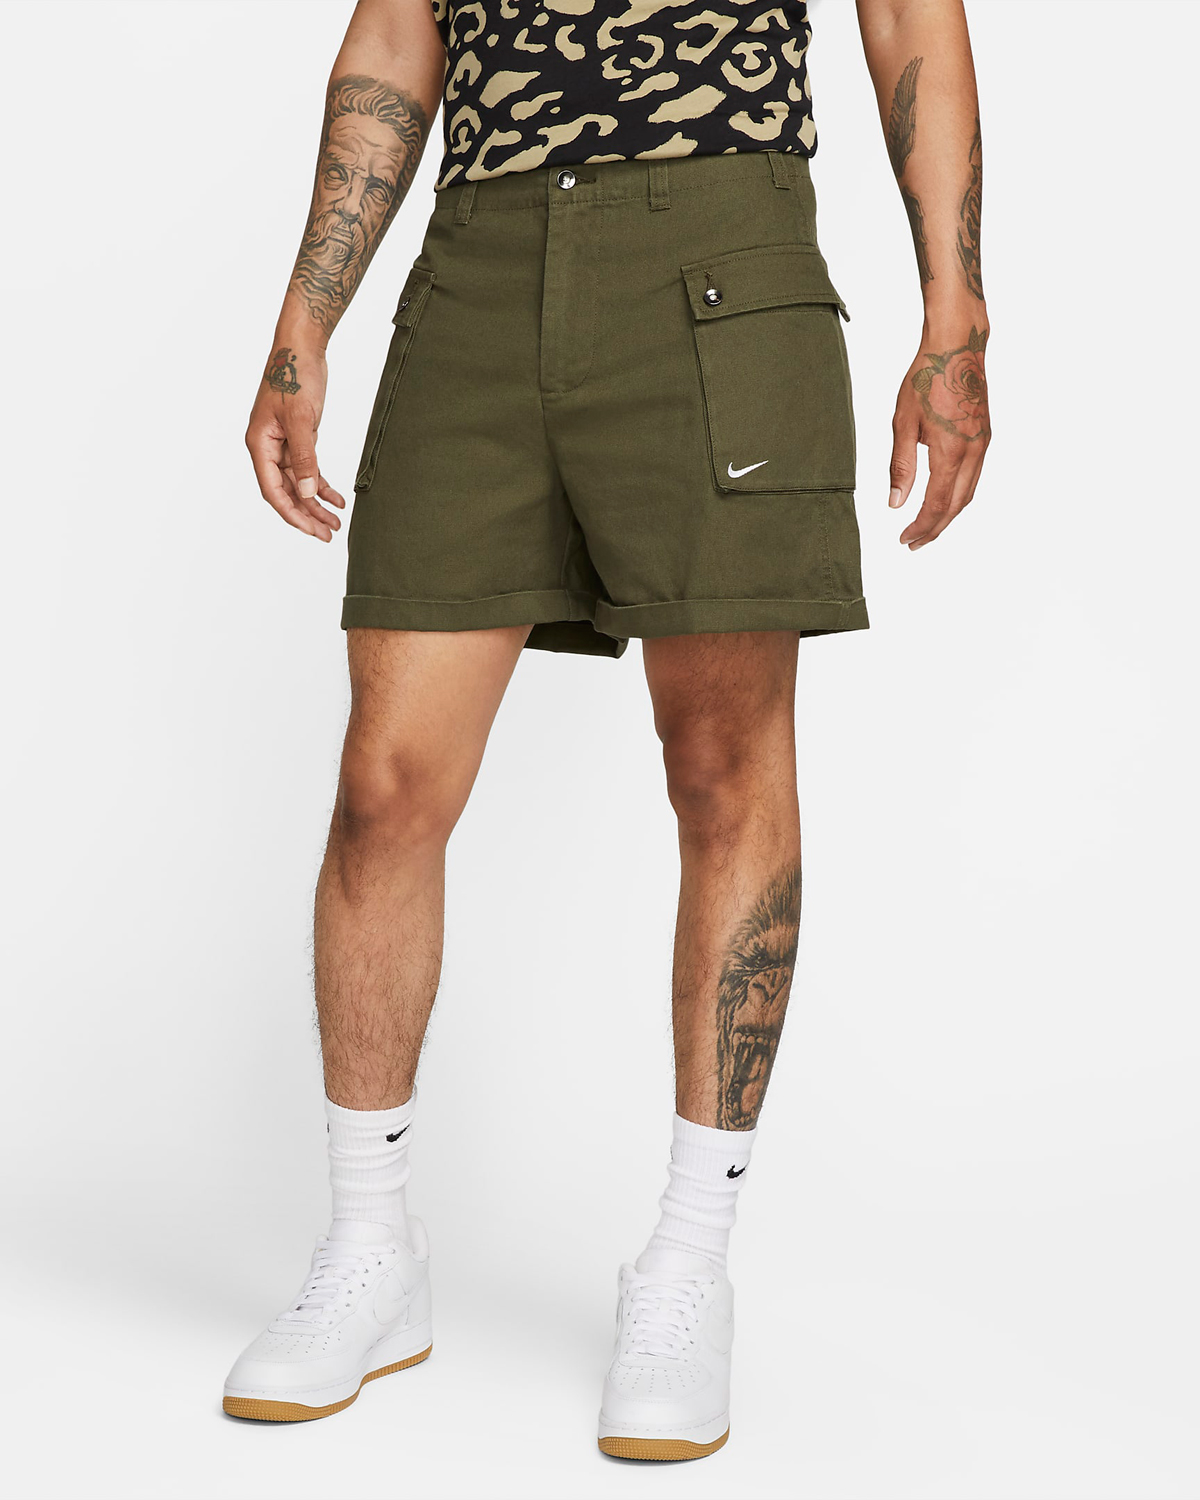 Nike-Life-Cargo-Shorts-Cargo-Khaki